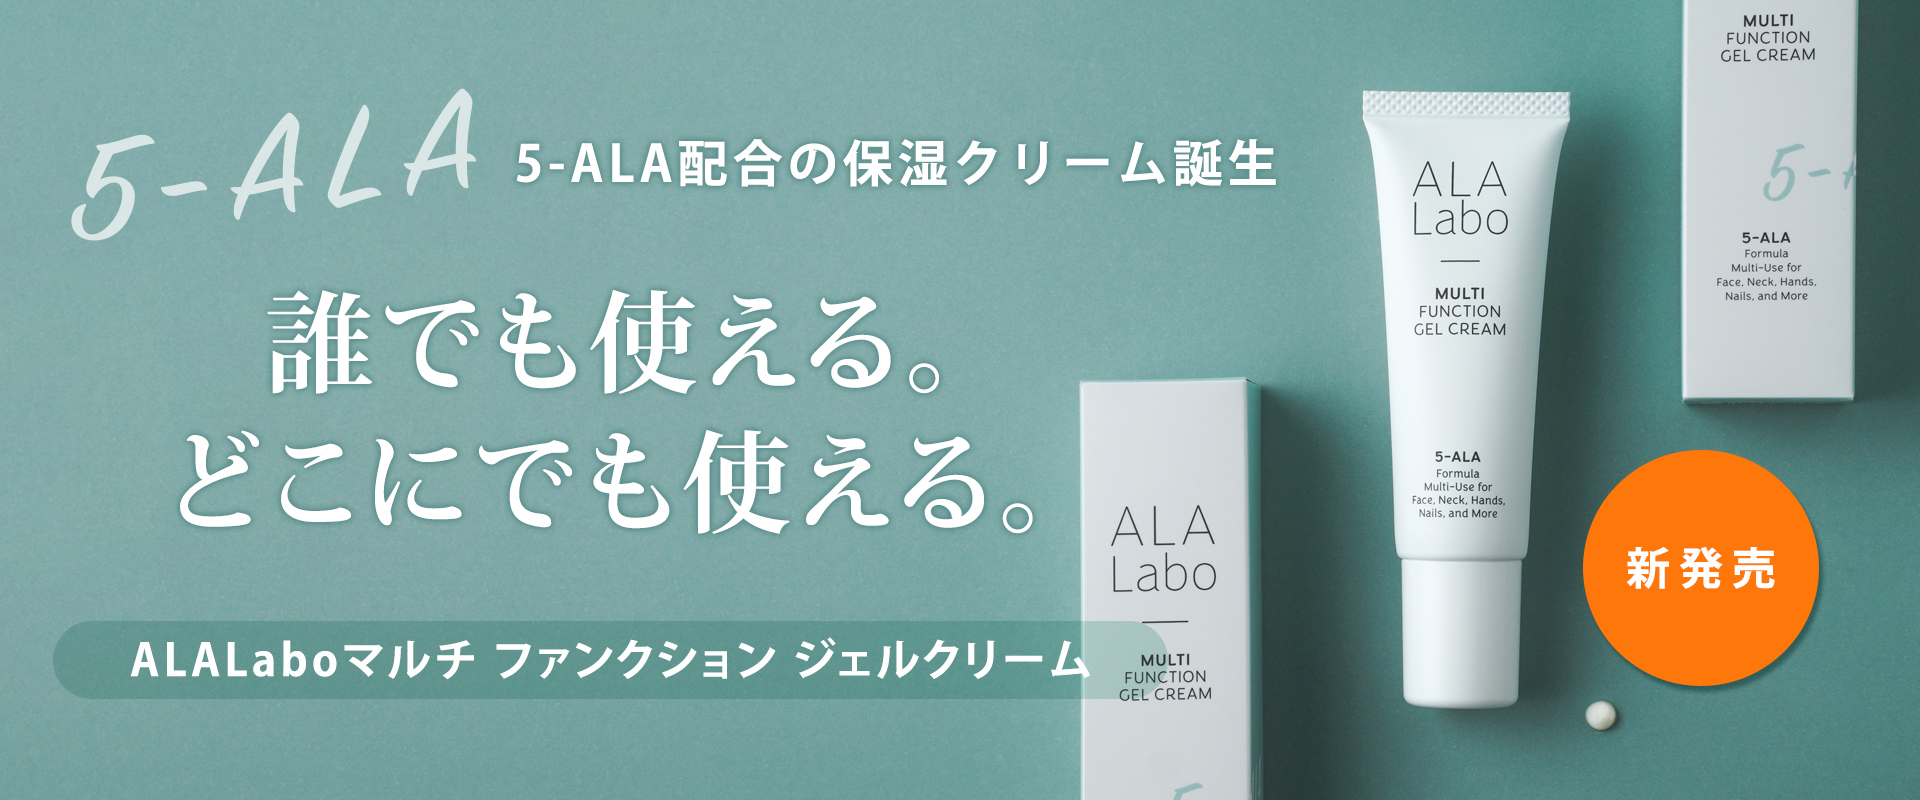 ALALabo マルチファンクションジェルクリーム！ 5-ALA配合の保湿クリーム誕生。誰でも使える。どこにでも使える。